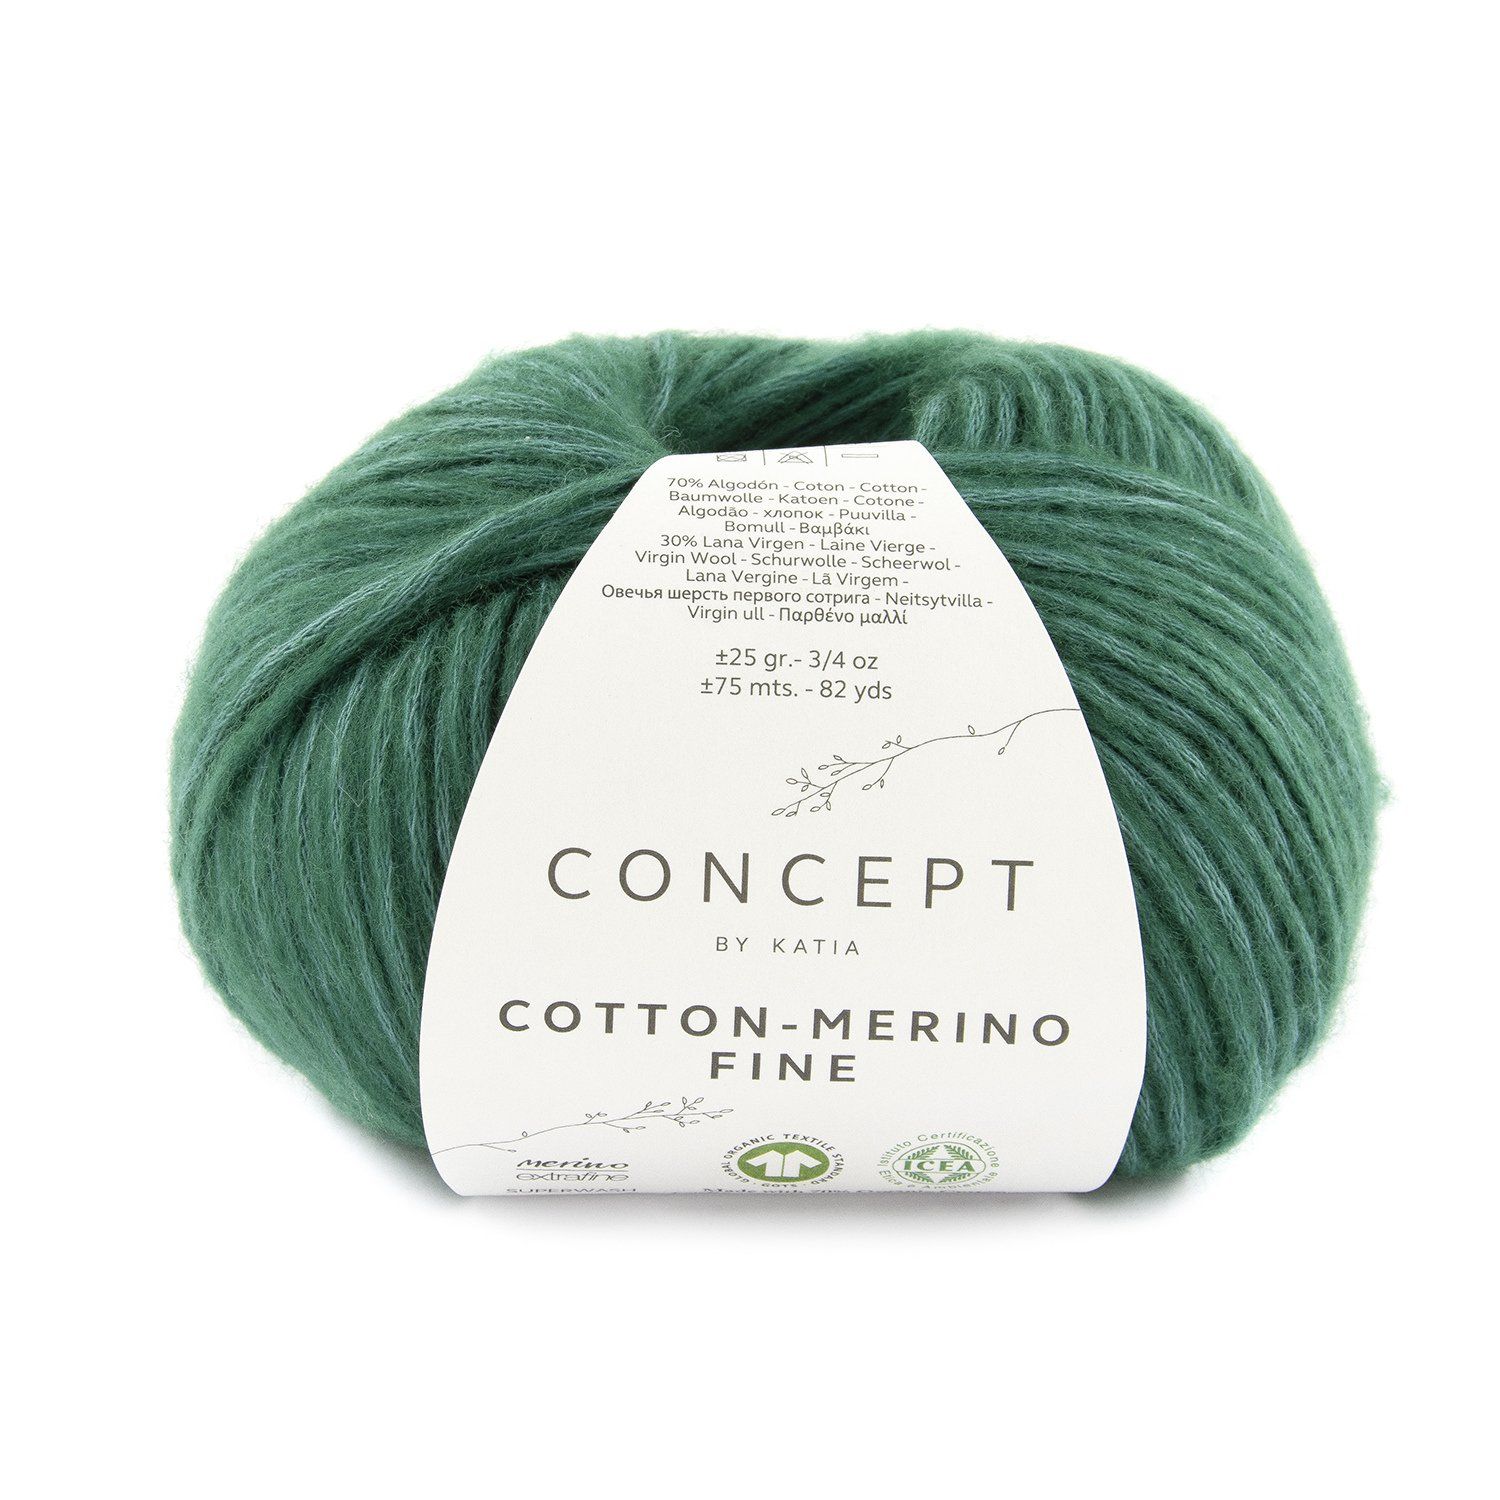 Concept cotton Merino fine